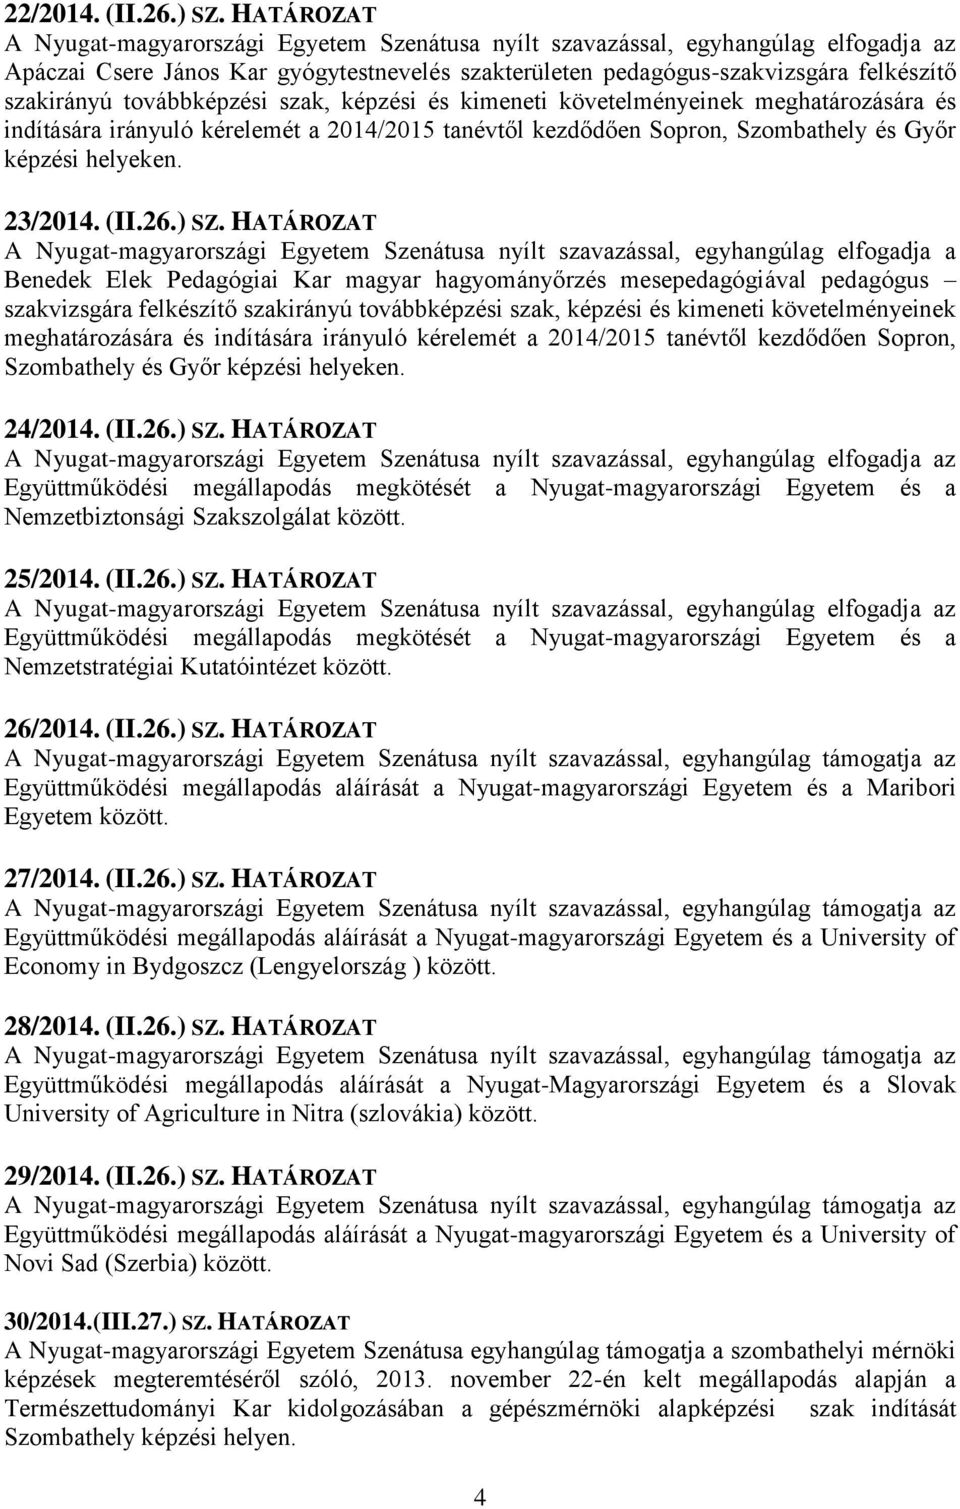 irányuló kérelemét a 2014/2015 tanévtől kezdődően Sopron, Szombathely és Győr képzési helyeken. 23/2014. (II.26.) SZ.